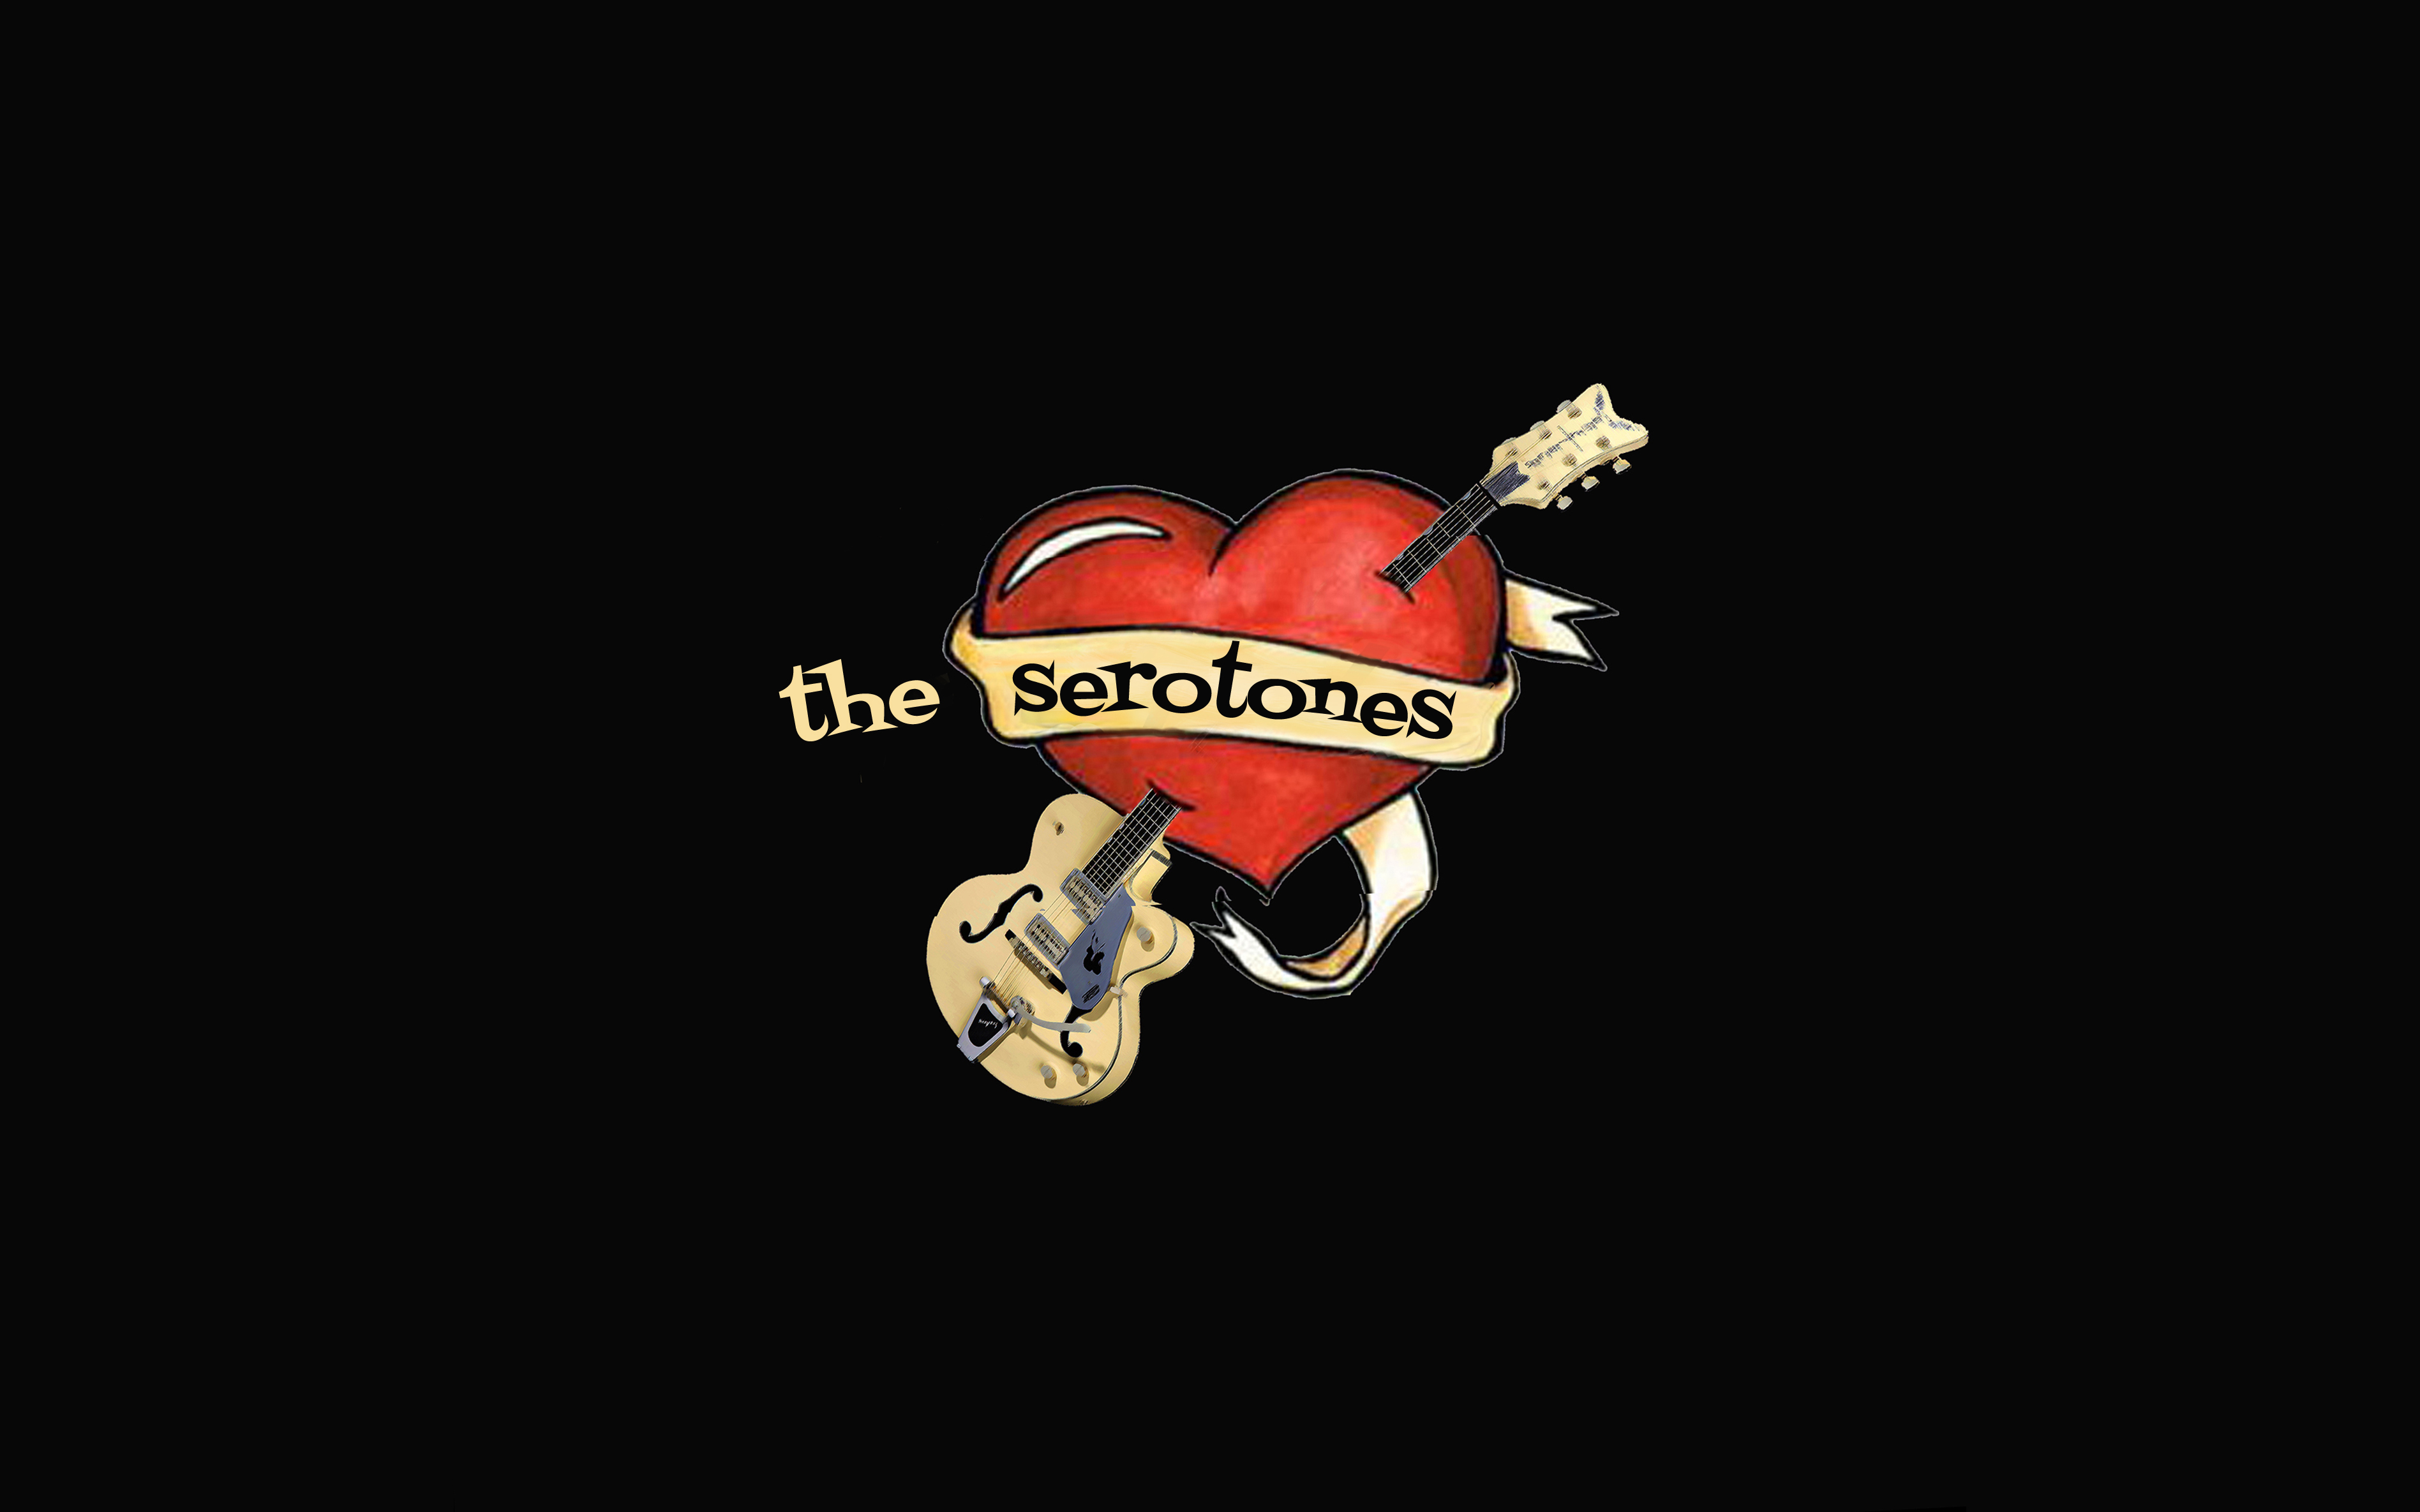 The serotones